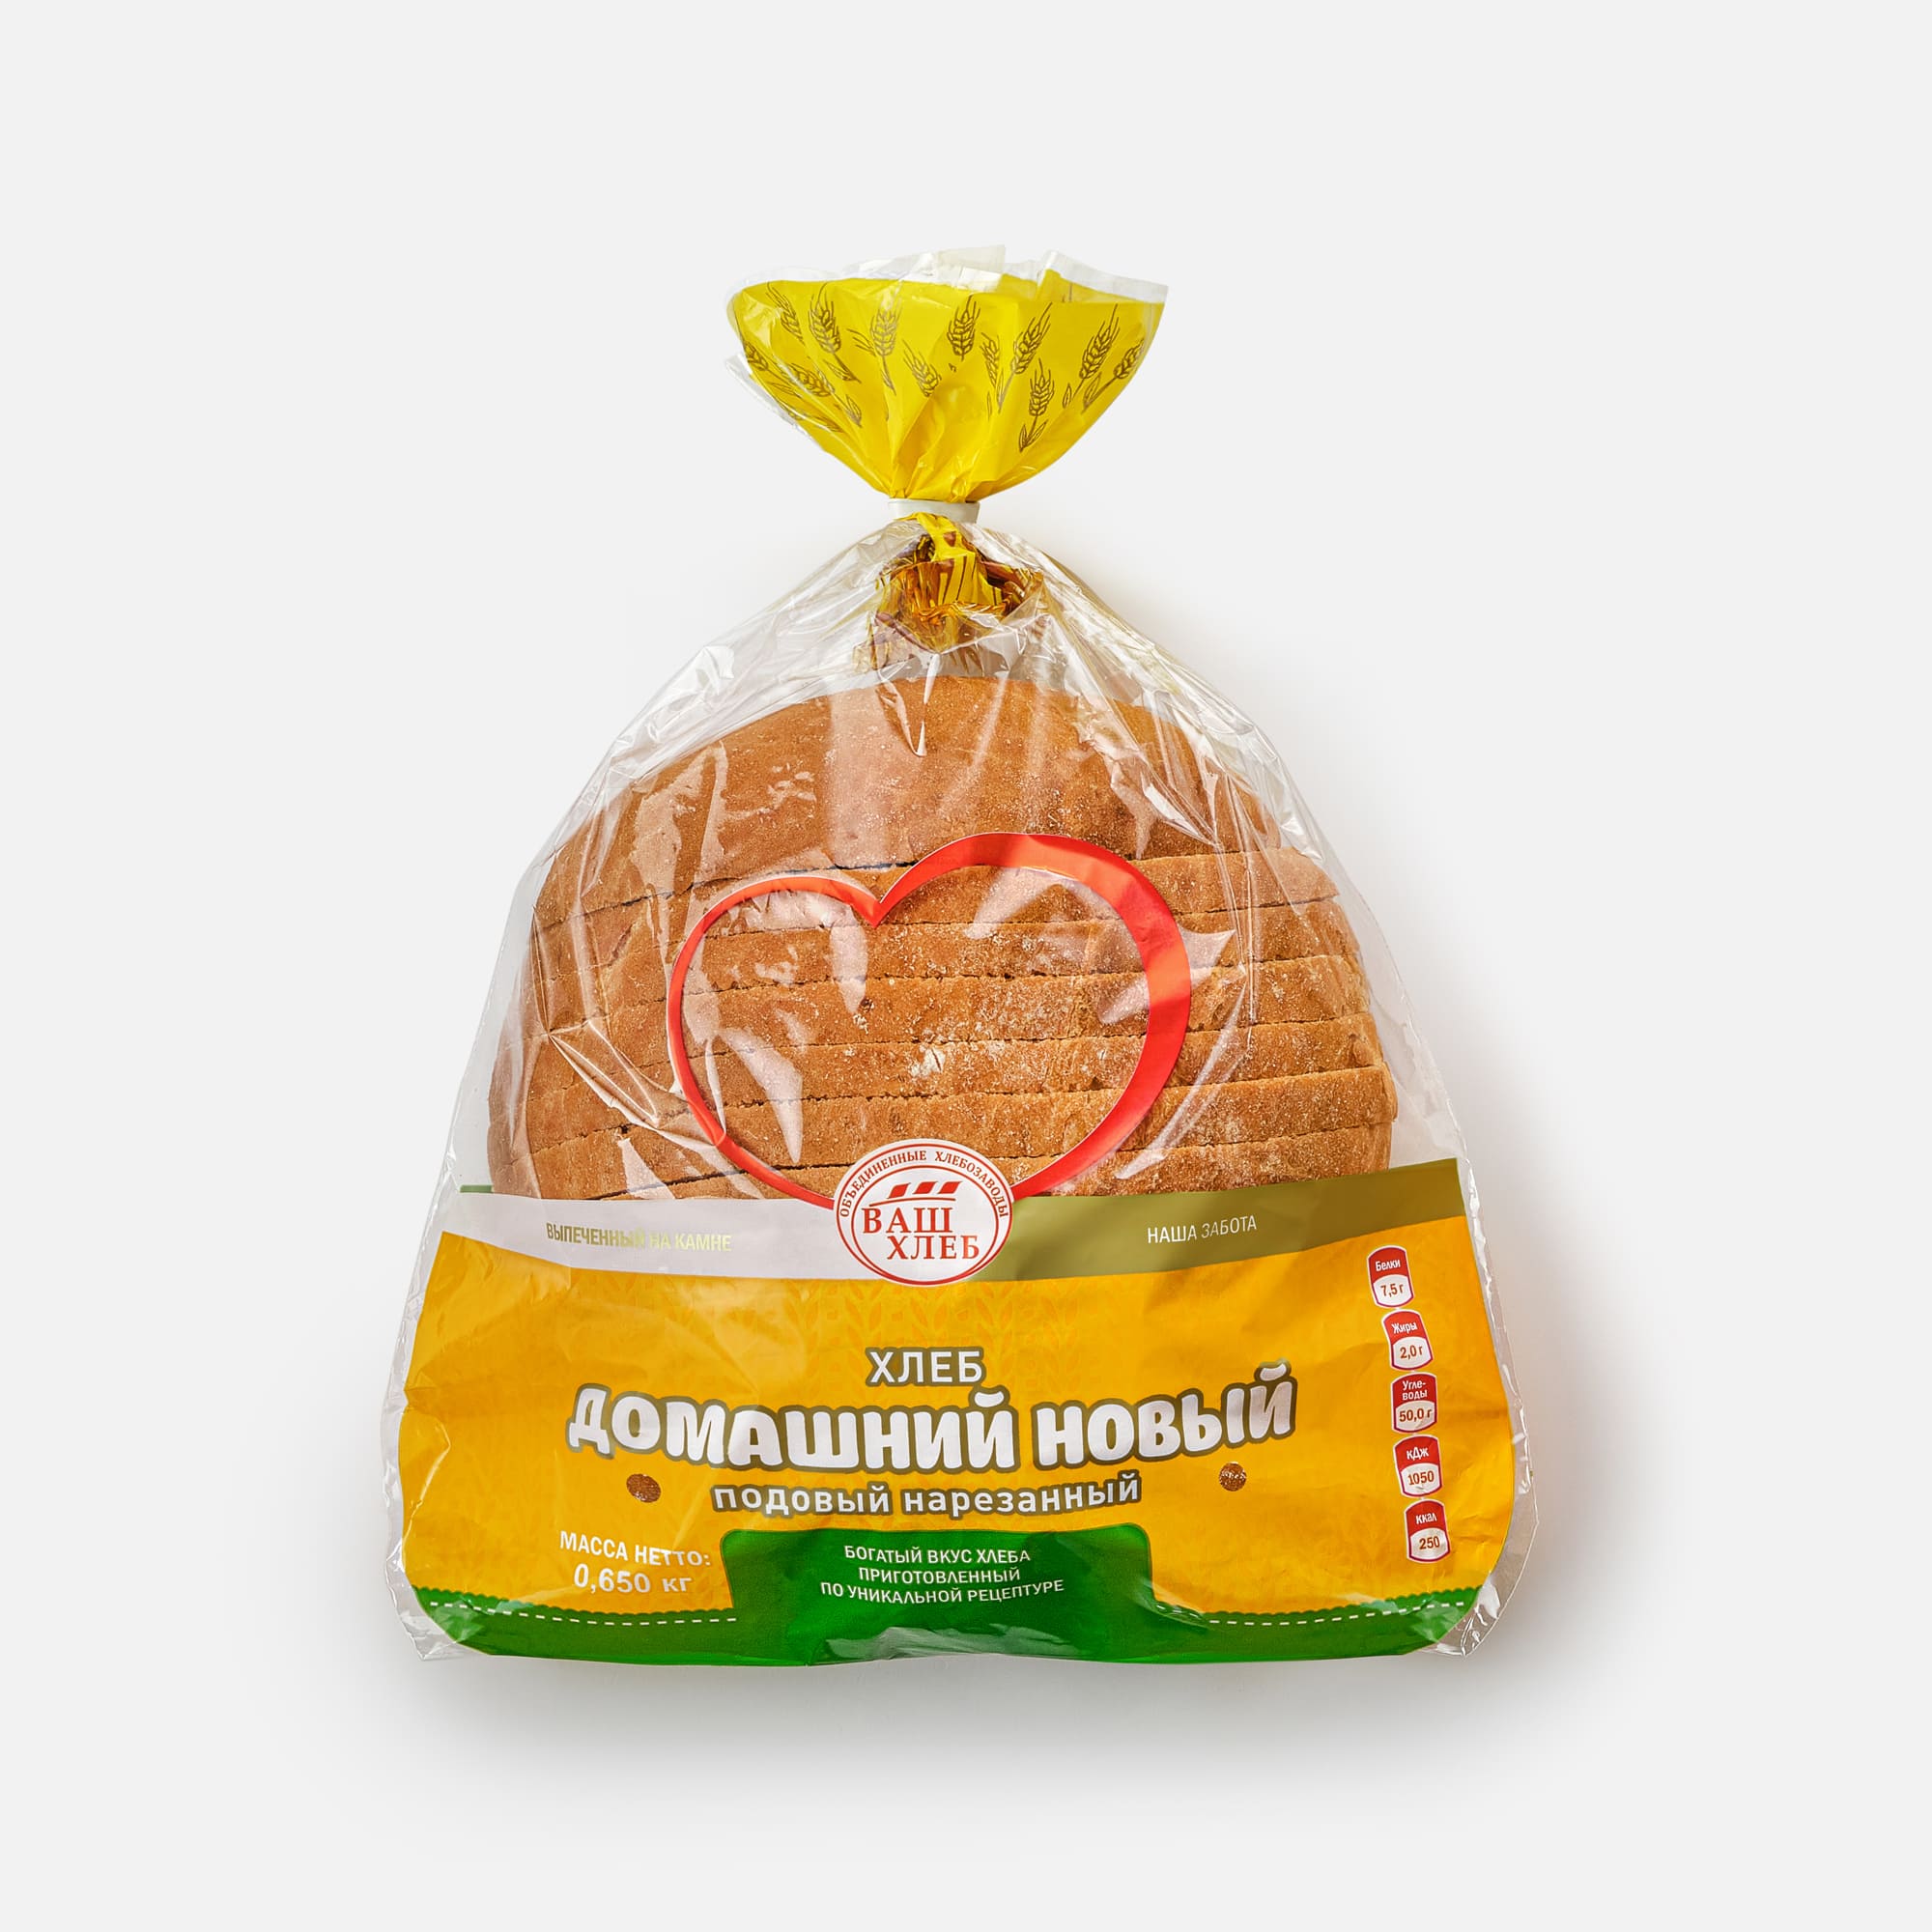 Хлеб «Домашний» новый 